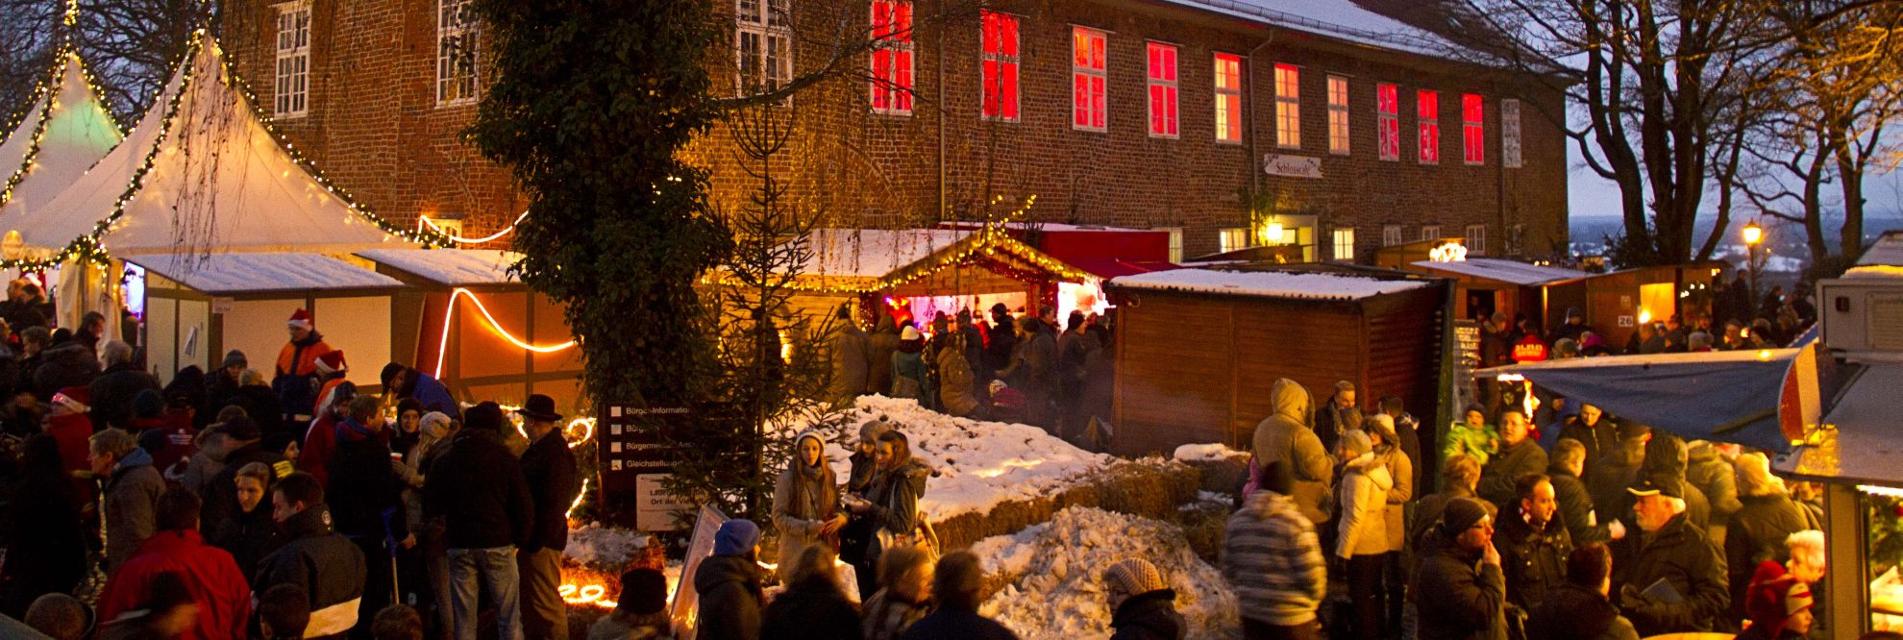 Einer der schönsten Weihnachtsmärkte im Norden vor traumhafter KulisseLauenburger Weihnachtsmarkt am Schloss Bald ist es wieder soweit, der Weihnachtsmarkt 2022 am Lauenburger Schloss öffnet seine Pforten. Einer der schönsten Weihnachtsmärkte im Norden in traumhafter Kulisse direkt auf dem beleuchteten Lauenburger Schlossplatz startet am 3. Adventswochenende. Die Besucher können klassische Weihnachtsmarkt-Leckereien mit fantastischem Ausblick auf die Elbe genießen. Vorweihnachtliche Stimmung kommt auf bei diesem gemütlichen Markt, wenn Kinderaugen leuchten und Glühweinbecher duften.        Los geht es am Freitag, 09. Dezember, um 14.00 Uhr am Schloss, die offizielle Eröffnung in der Maria-Magdalenen-Kirche in der Lauenburger Altstadt beginnt um 16.00 Uhr. Anschließend wird das Weihnachtslicht vom Altar der Kirche zur Krippe auf dem Weihnachtsmarkt getragen. Auch in diesem Jahr bieten zahlreiche Kunsthandwerker und Gastronomen ihre Waren an. Der Weihnachtsmann, seine Engel und lebende Märchenfiguren rund um Rapunzel und Frau Holle gehören wie in den letzten Jahren zum Programm.        Dazu wird es wieder ein großes Bühnenprogramm mit Aktionen, Lesungen und viel Musik geben. Auch der „Lebendige Adventskalender“ findet in diesem Jahr auf der Bühne statt! Für die Kinder wird es ein Märchenzelt am Schloss geben. Ein weiteres Highlight wird wieder der Lichterwald „Winterträume“ im Park am Stadtentwicklungsamt sein. Ein übergroßer beleuchteter Mond zeigt den Besuchern den Weg zum illuminierten Lichterwald-Eingang.      Das Programm zum Weihnachtsmarkt wird in Kürze bekannt gegeben, organisiert wird die Veranstaltung wie in den Vorjahren von der Wirtschaftlichen Vereinigung Lauenburg/Elbe.                                                              Geöffnet hat der Weihnachtsmarkt am 09.12. ab 14.00 Uhr, sowie am 10. und 12.11., samstags von 14 bis 22 Uhr und sonntags von 12 Uhr bis 19 Uhr, es gelten die aktuellen Corona-Regeln. Der Lauenburger Weihnachtsmarkt am Schloss – immer eine Reise wert!  